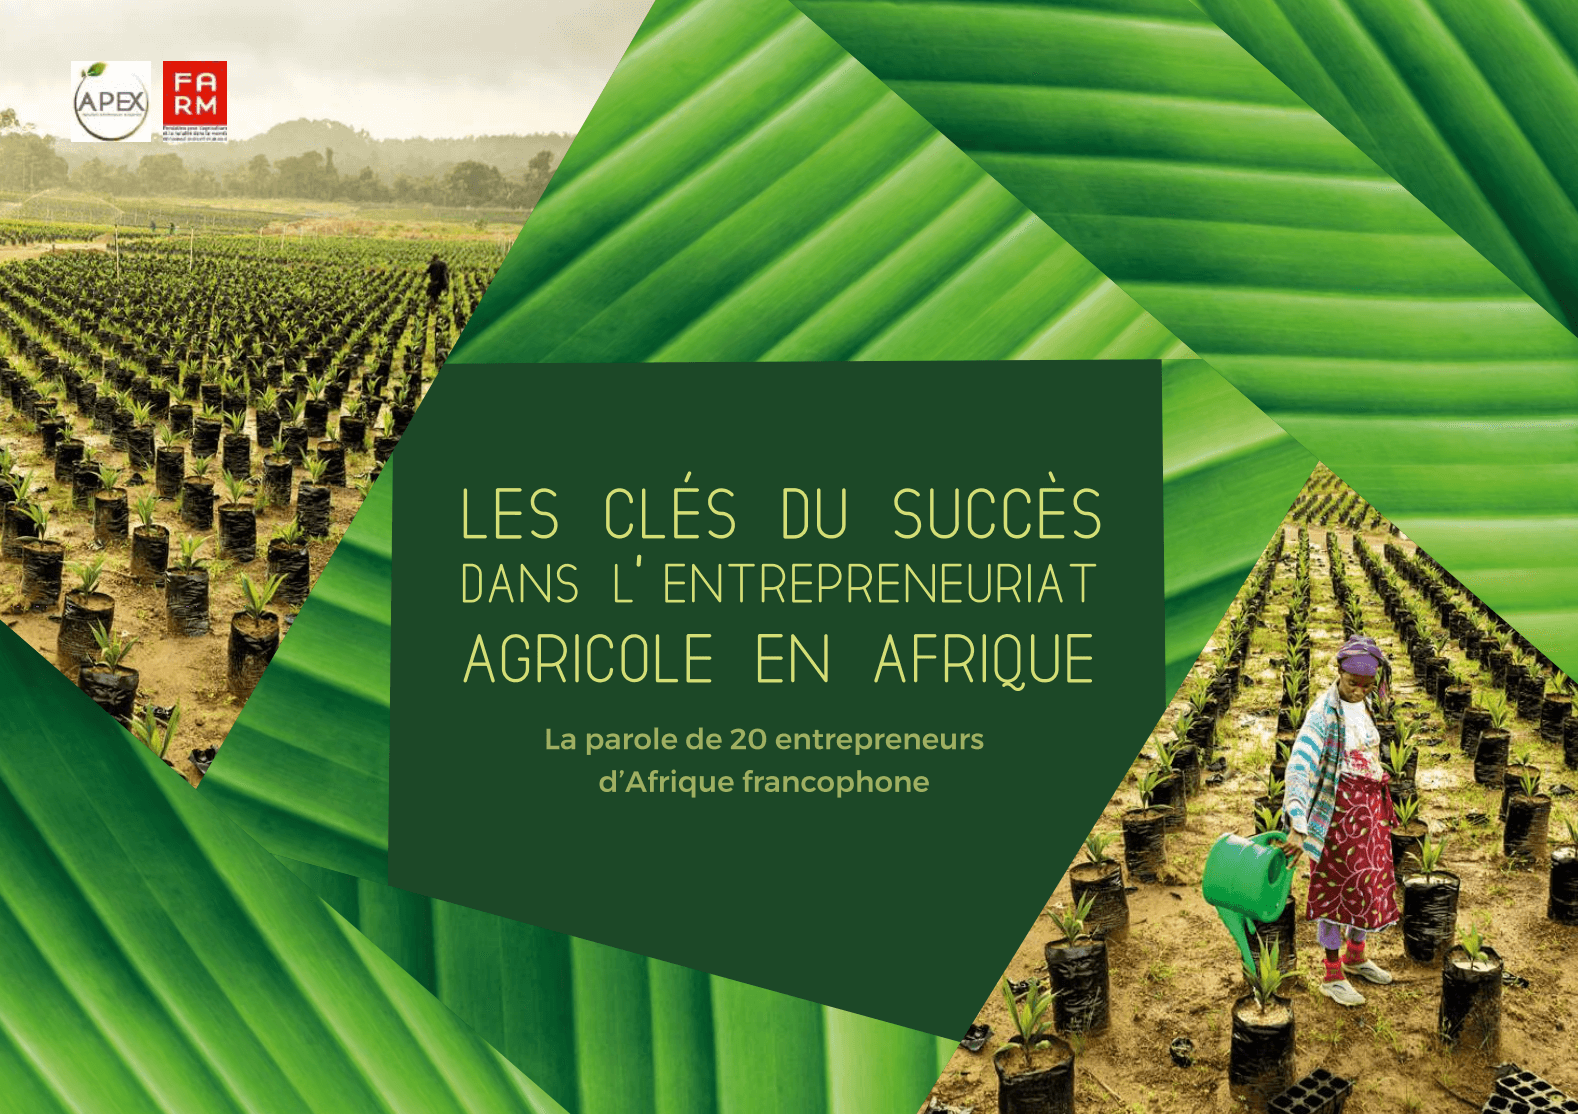 Notre dernière étude : Les clés du succès dans l’entreprenariat agricole en Afrique